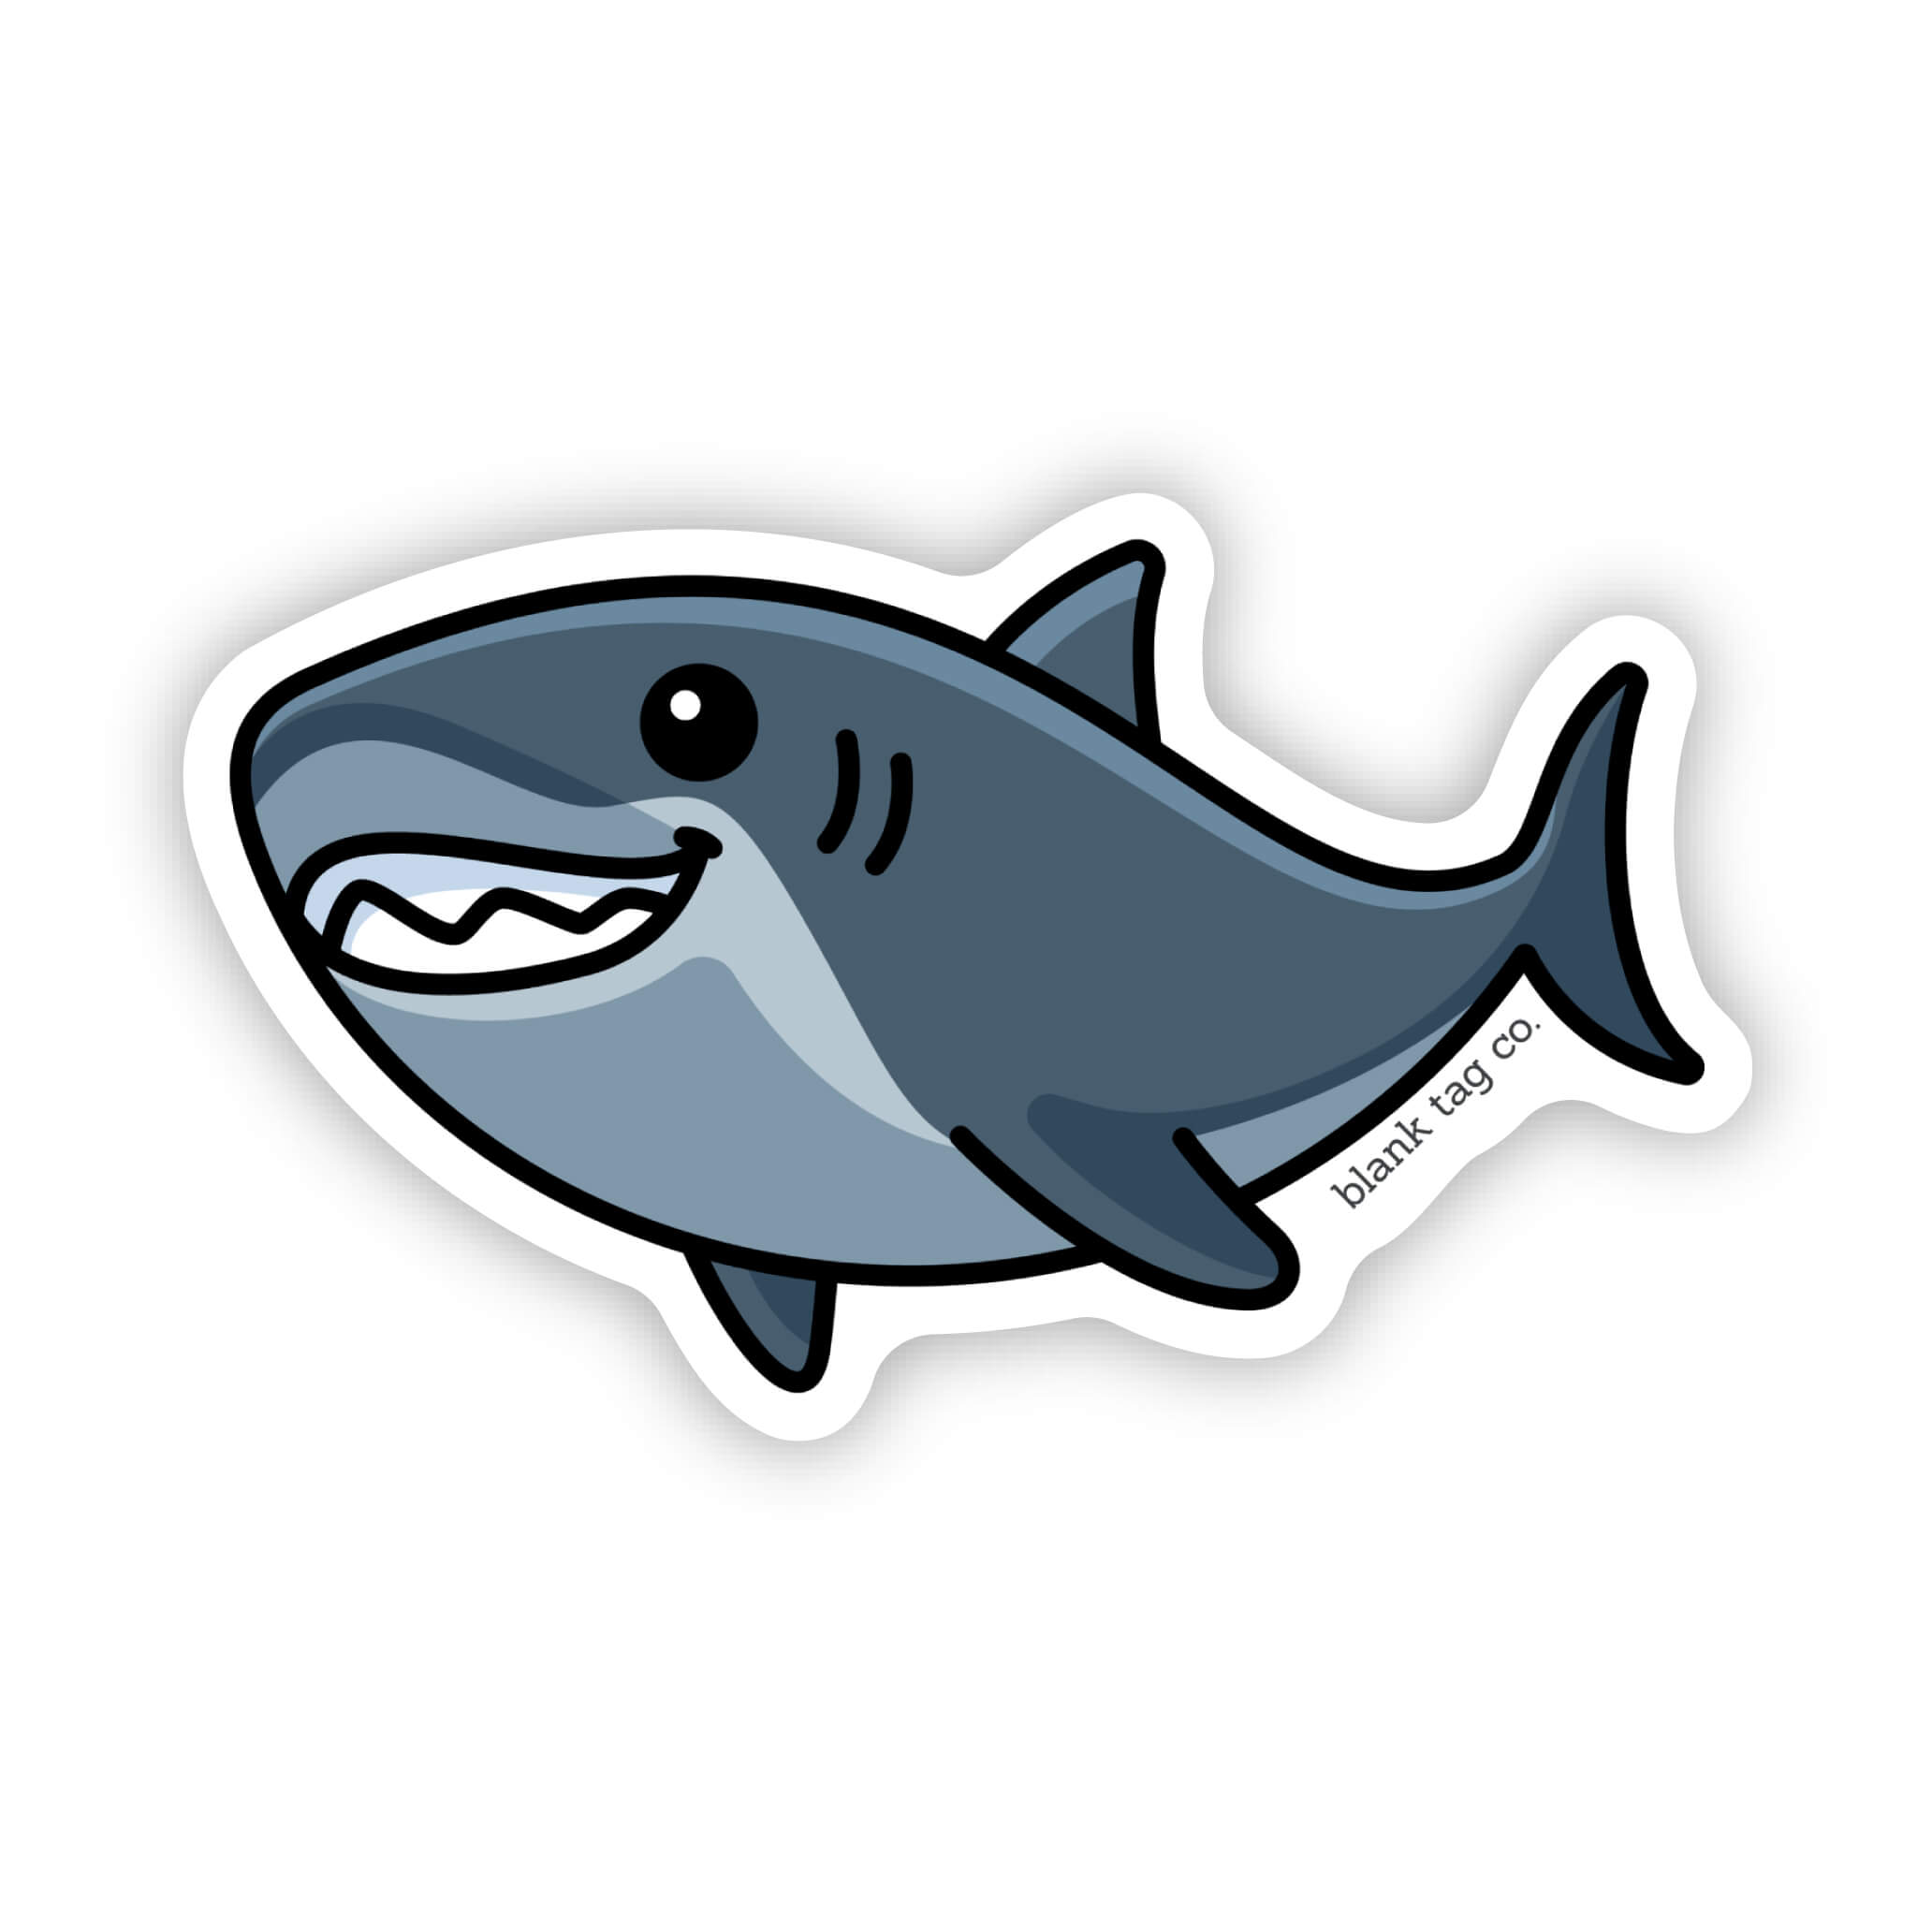 The Shark Sticker